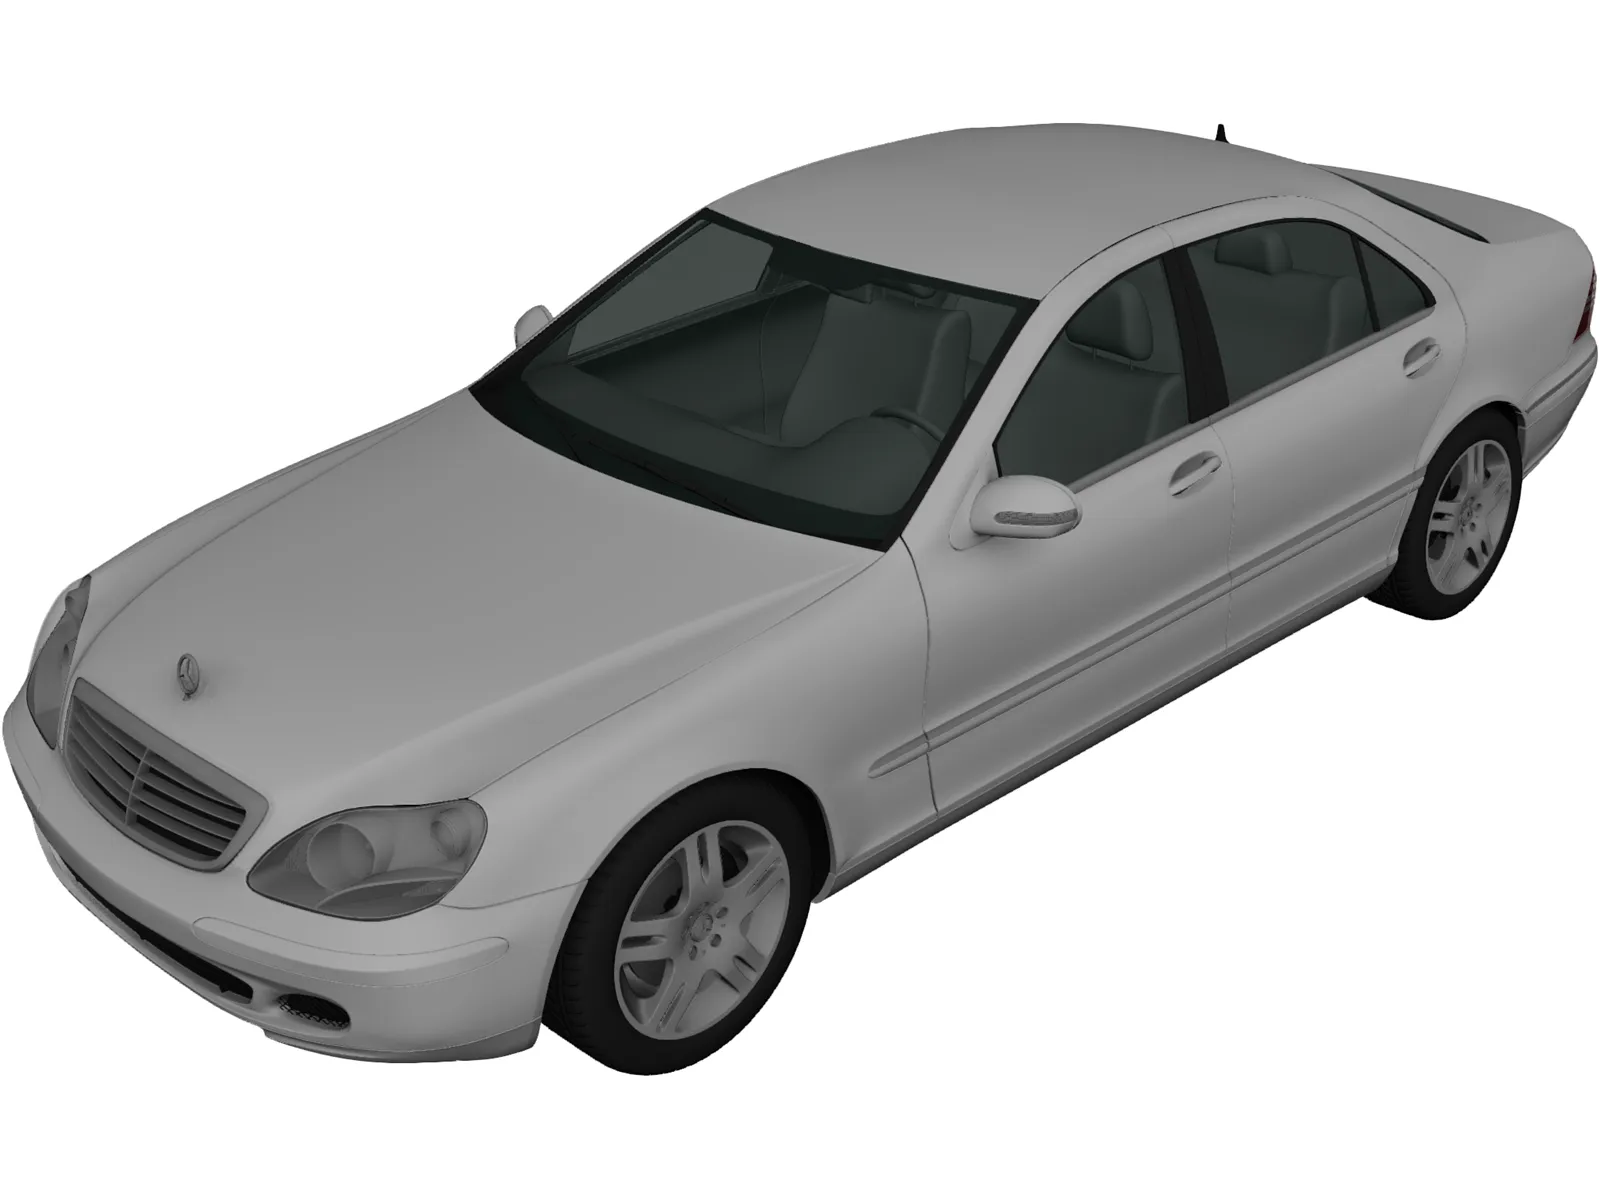 Mercedes-Benz S500 (2004) 3D Model